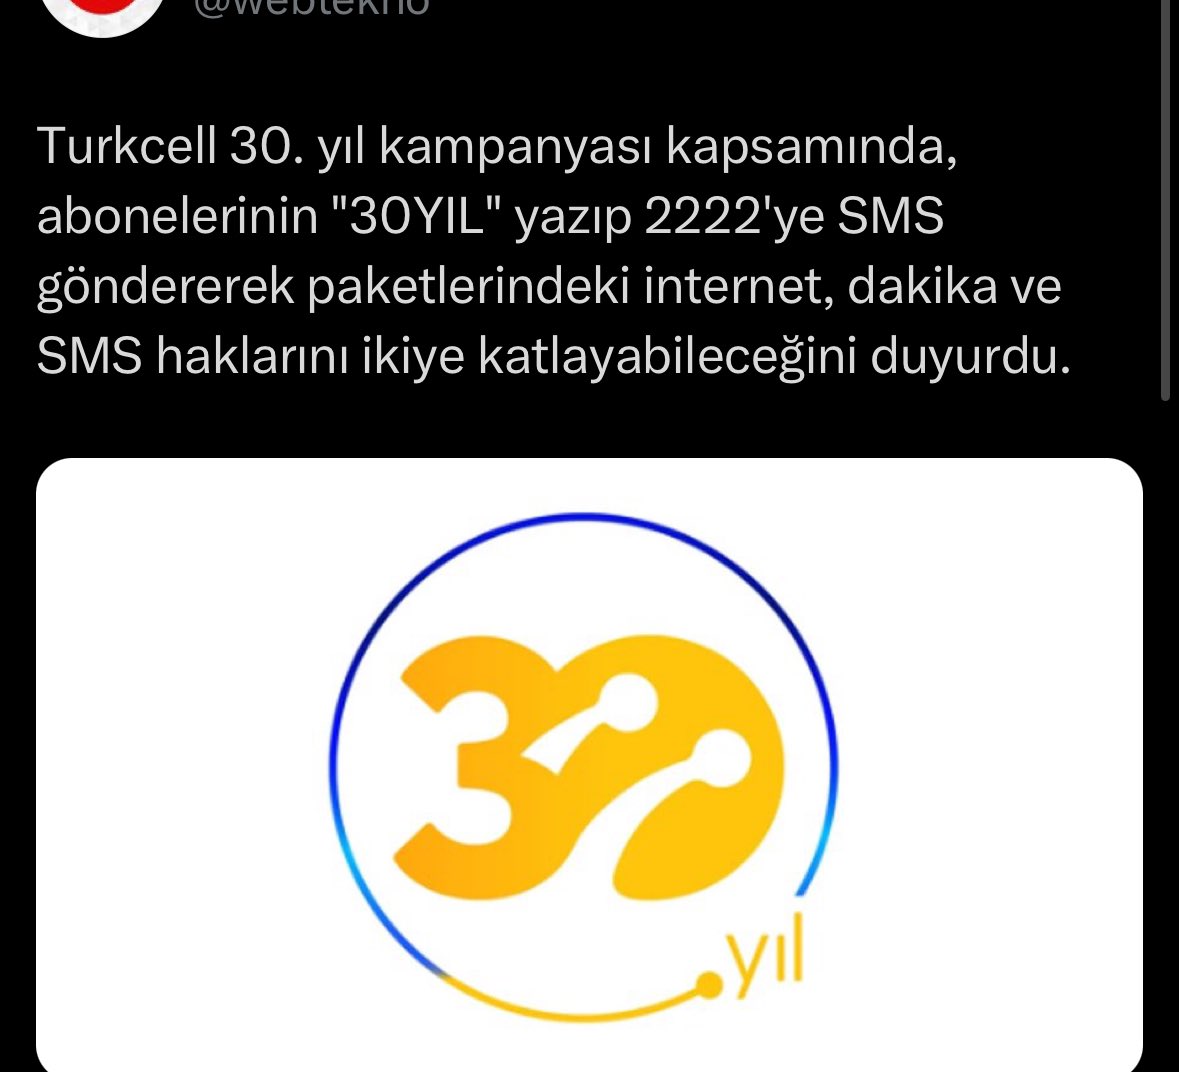 Turkcell, internet kullanımı usulsüzlük iddialarına cevap vermek yerine sosyal medyada konunun unutulması için kampanya başlattı. Bizim toplum da sorgusuz sualsiz atladı. Bu kadar koyun olursanız, sizi güden de çok olur.